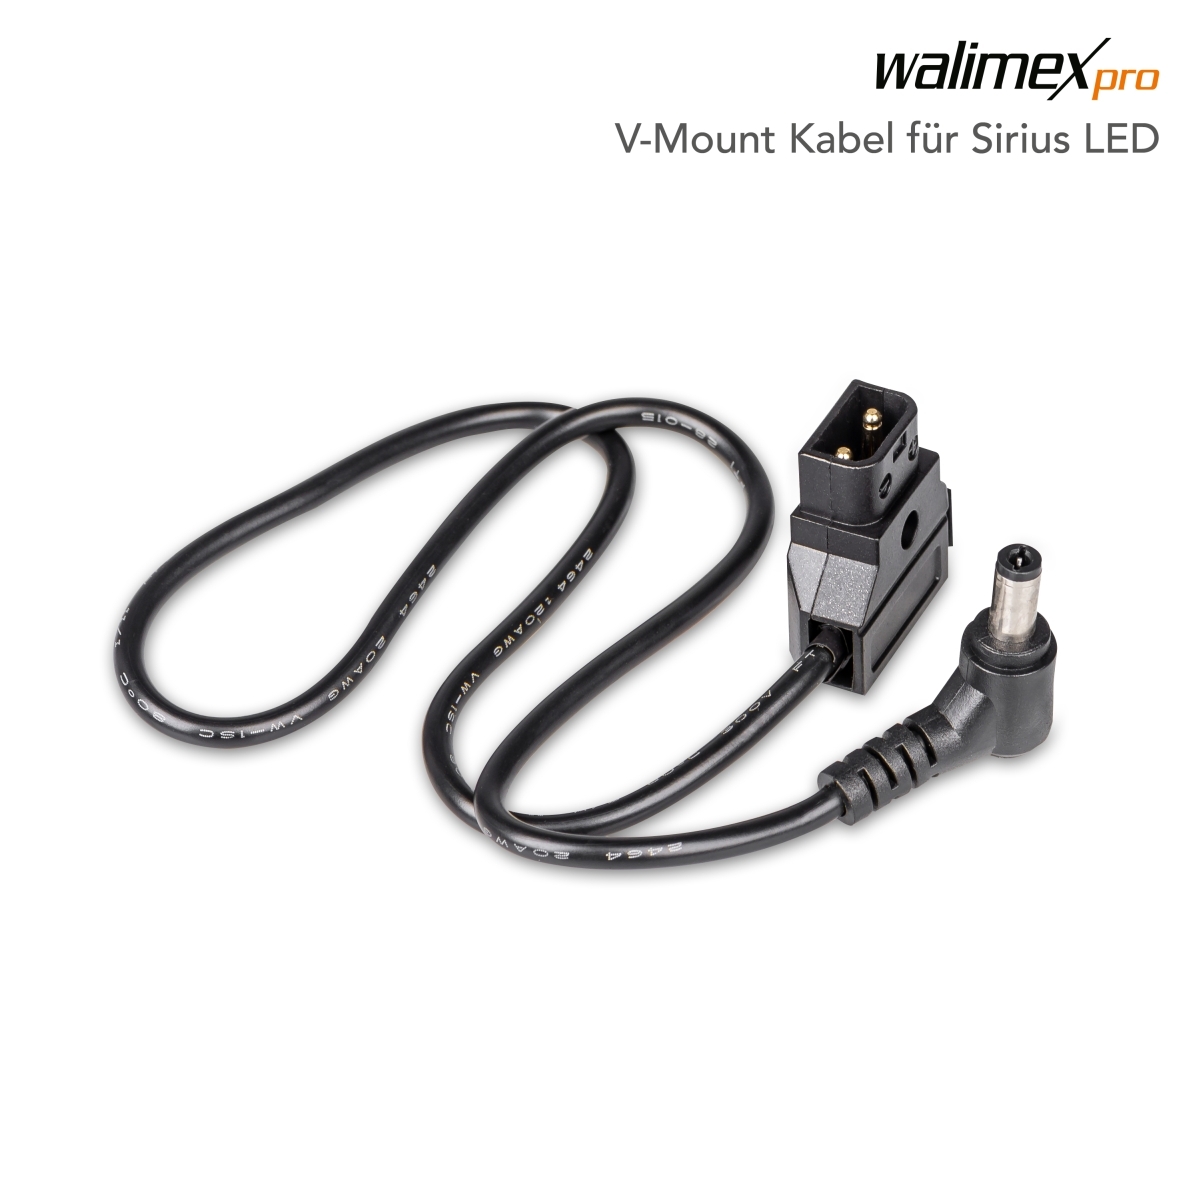 Walimex pro Câble V-Mount pour Sirius